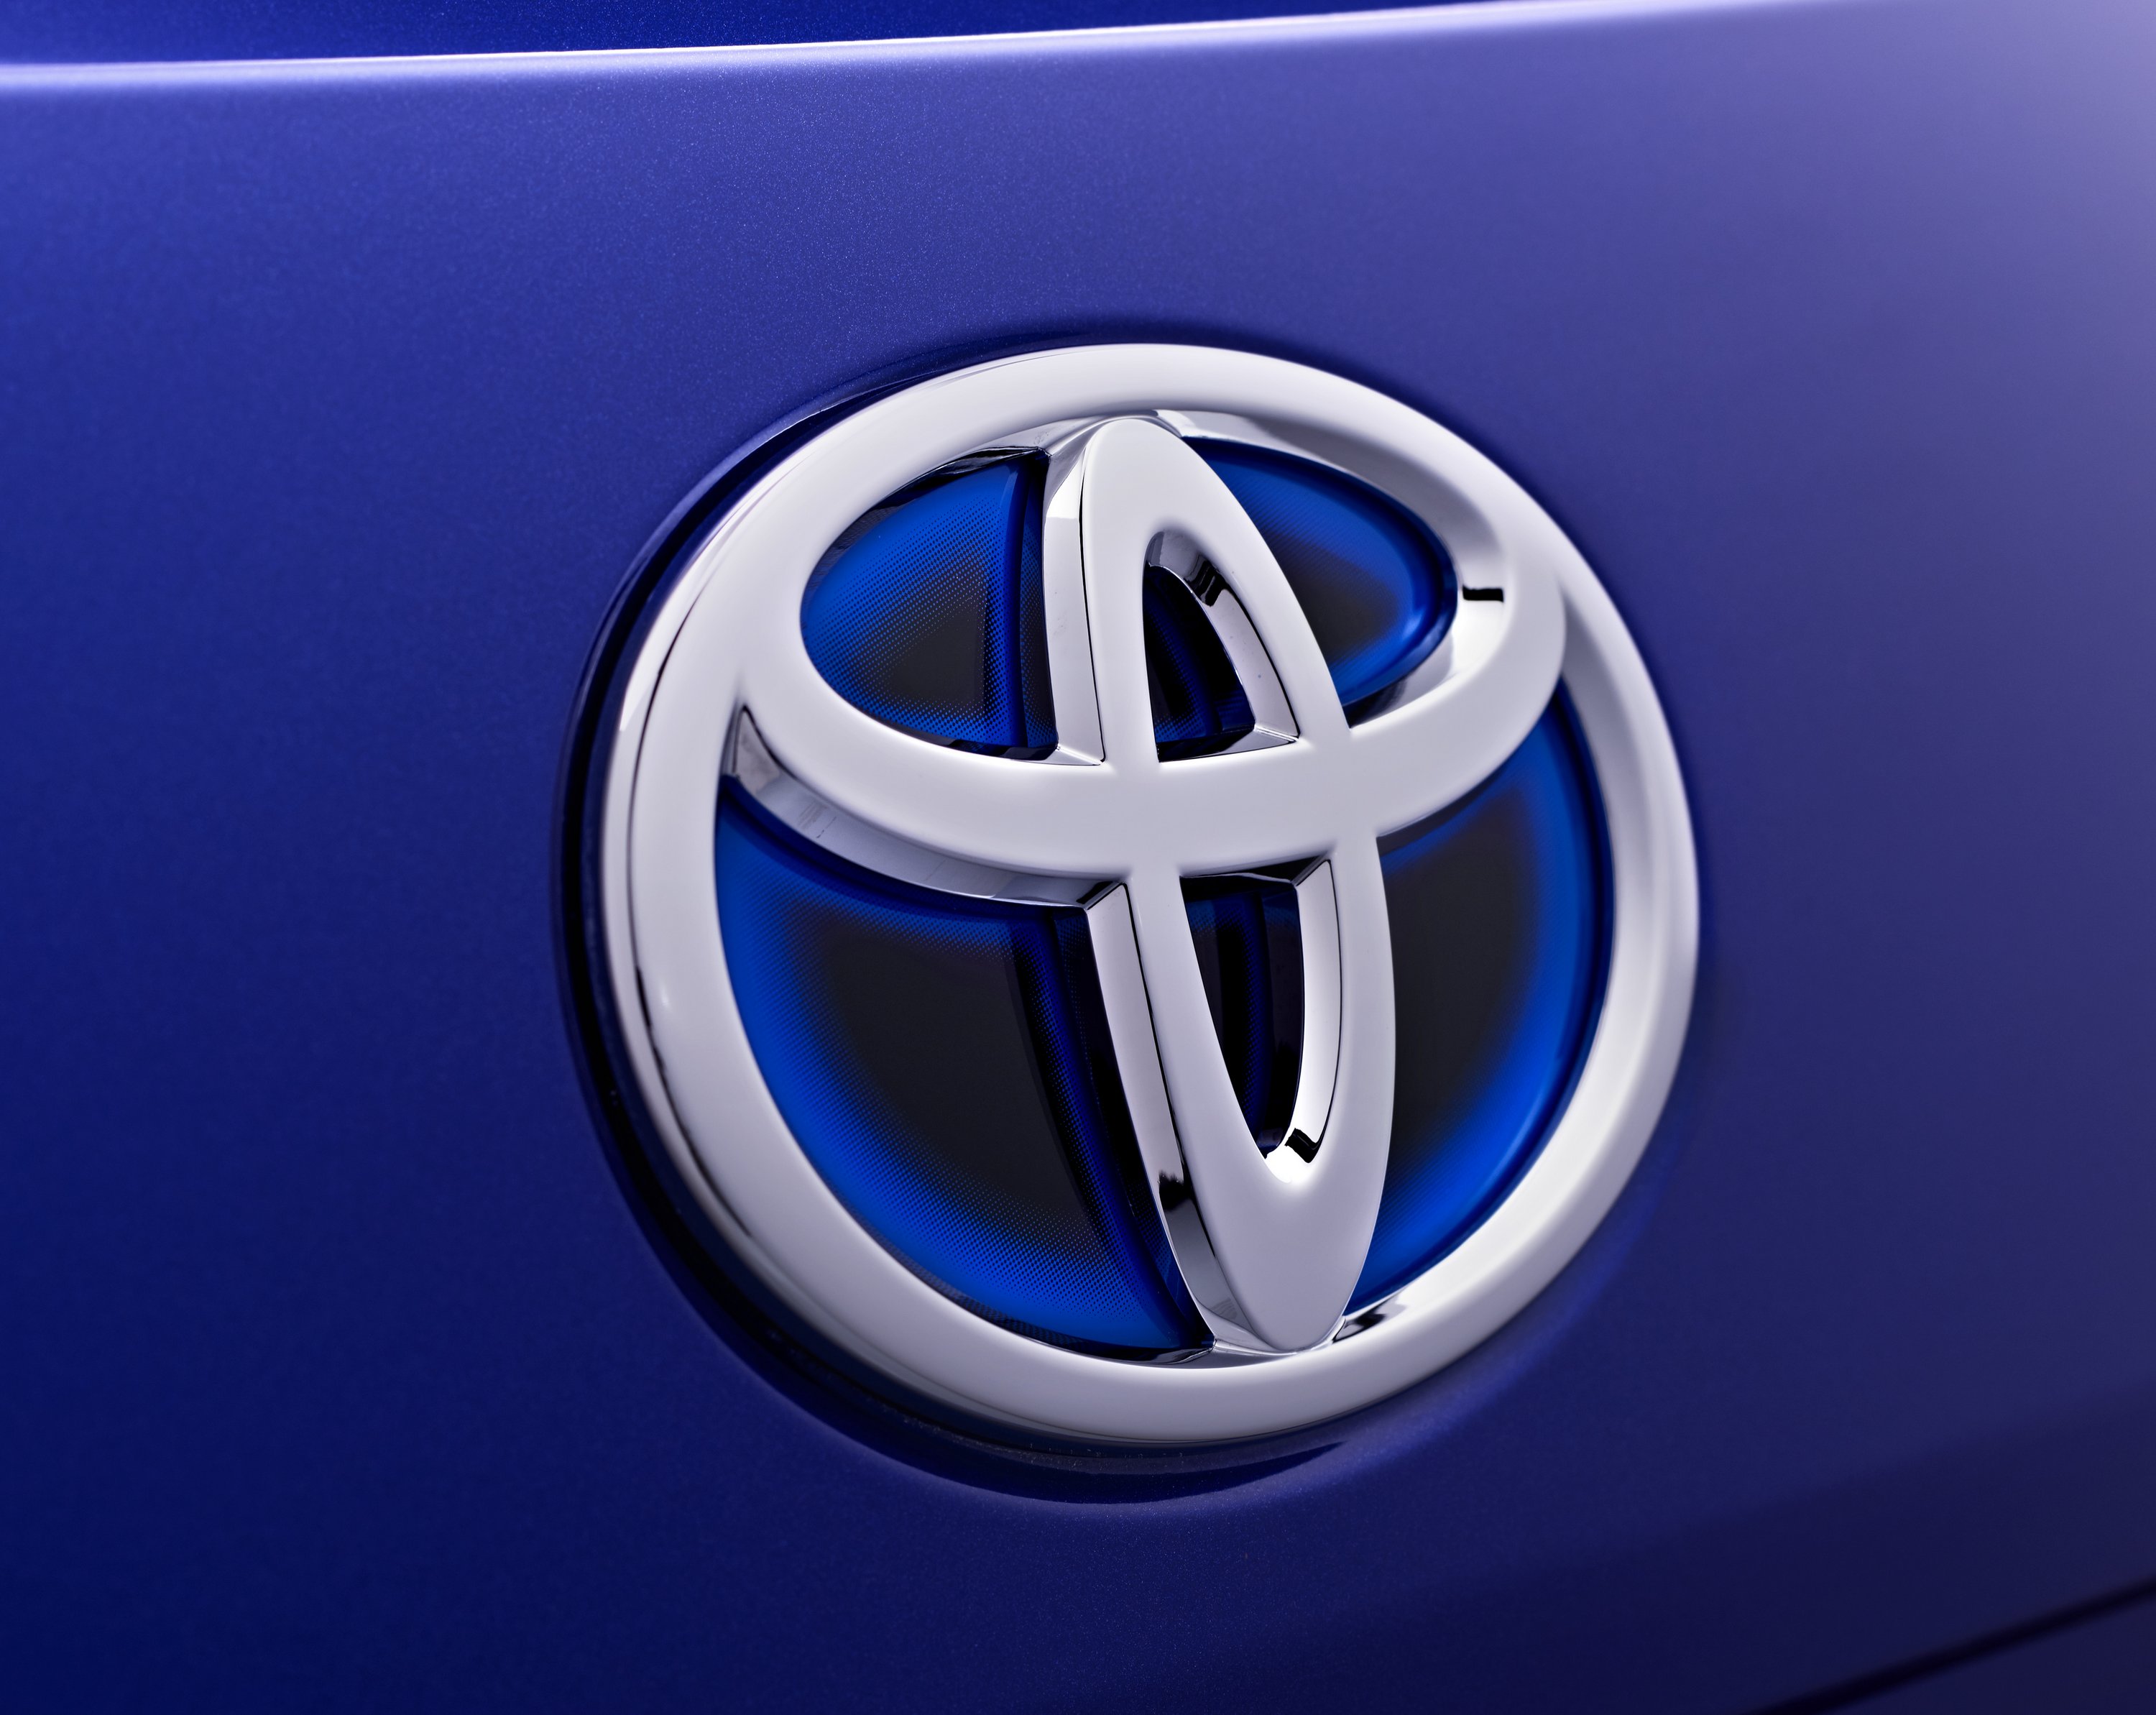 Izmosabbak lesznek a Toyota hibridjei 60